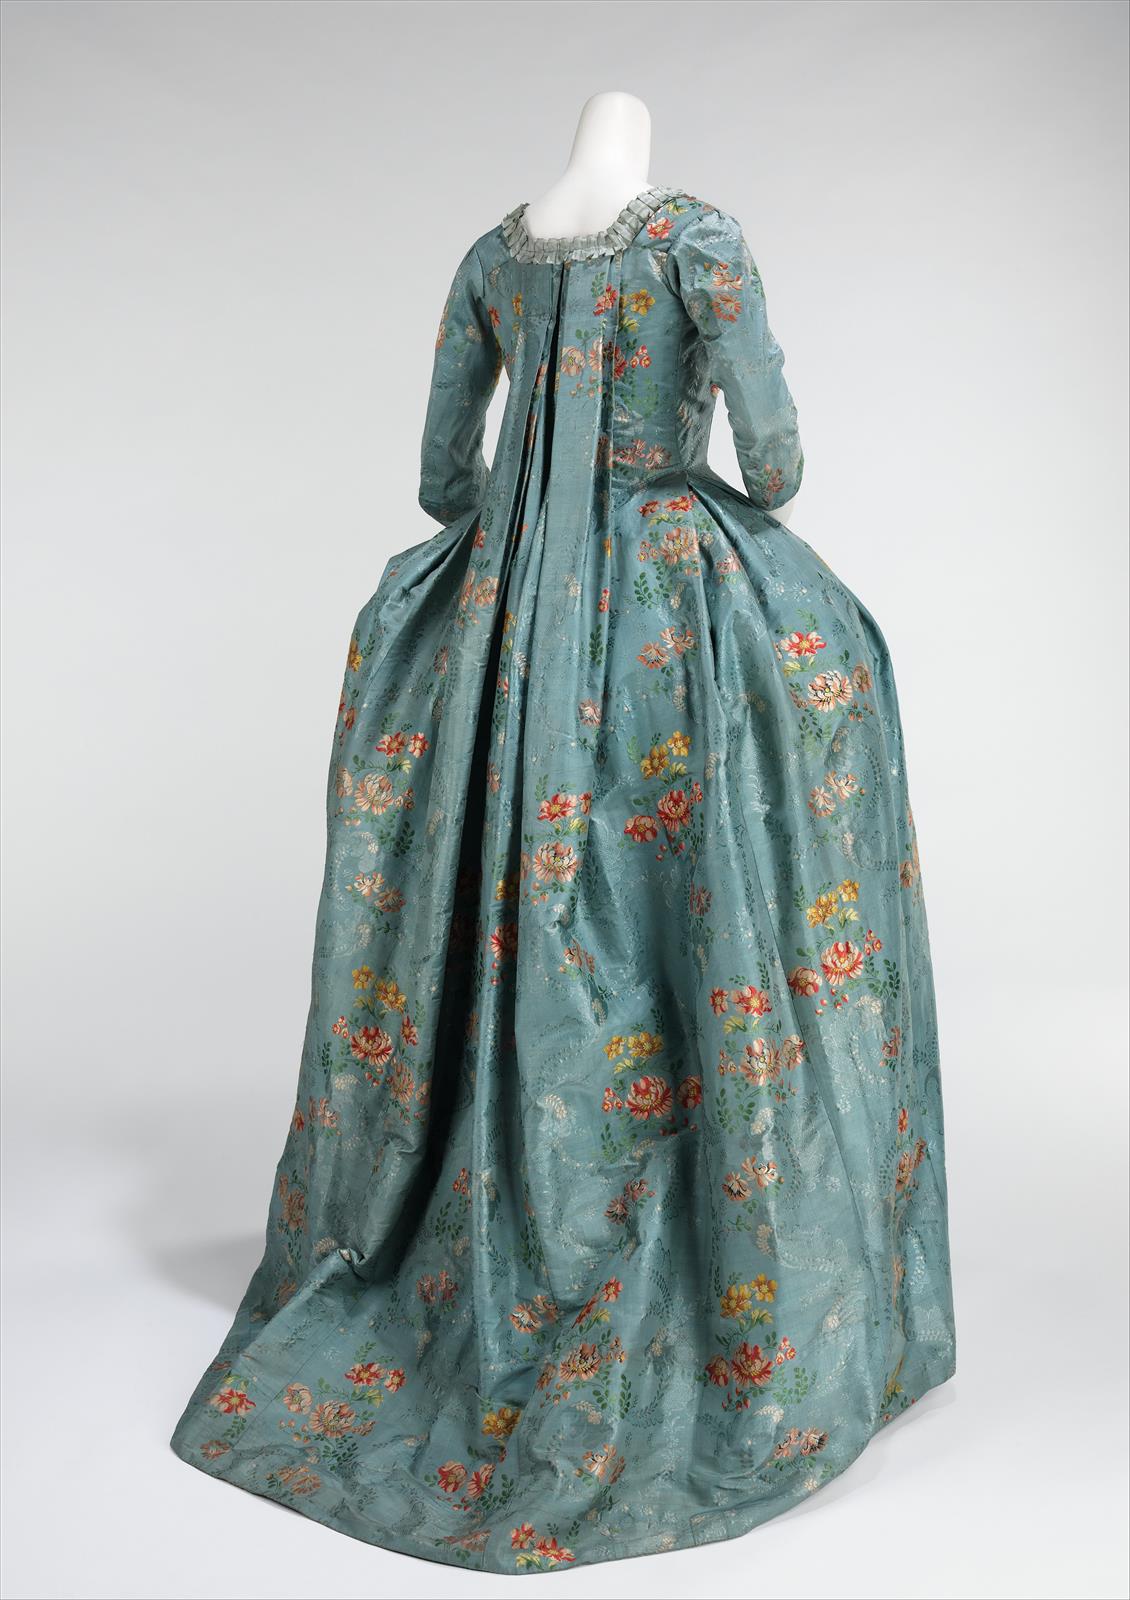 1765. Robe à la Française. French. Silk, cotton. metmuseum